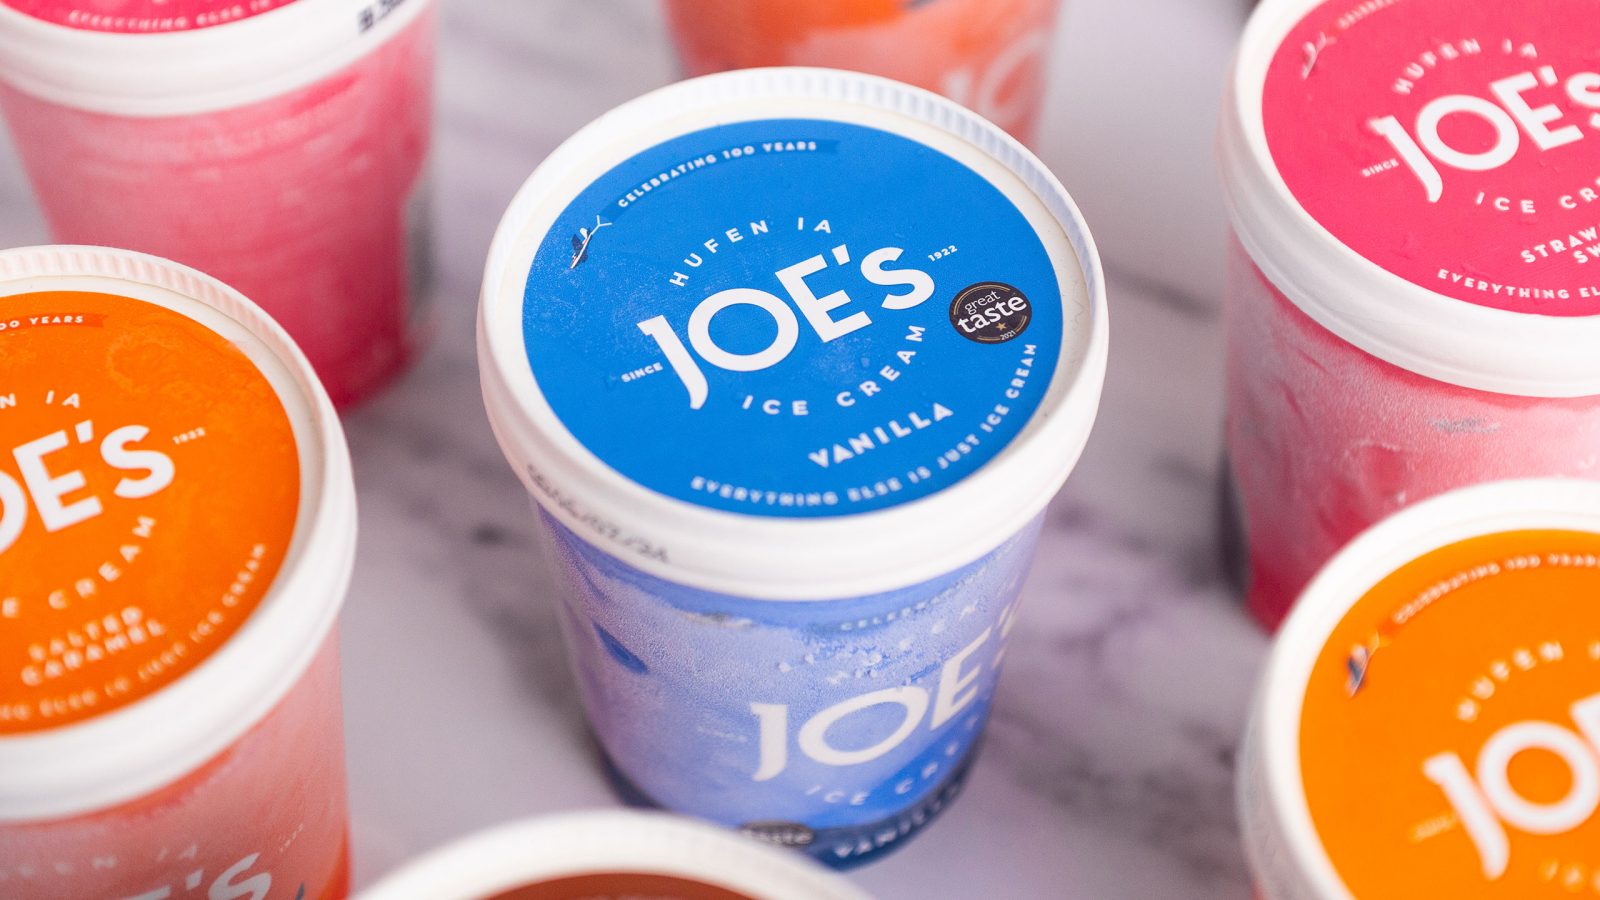 Joe's Ice Cream - Packaging Design - Group - Hero Ice cream shot